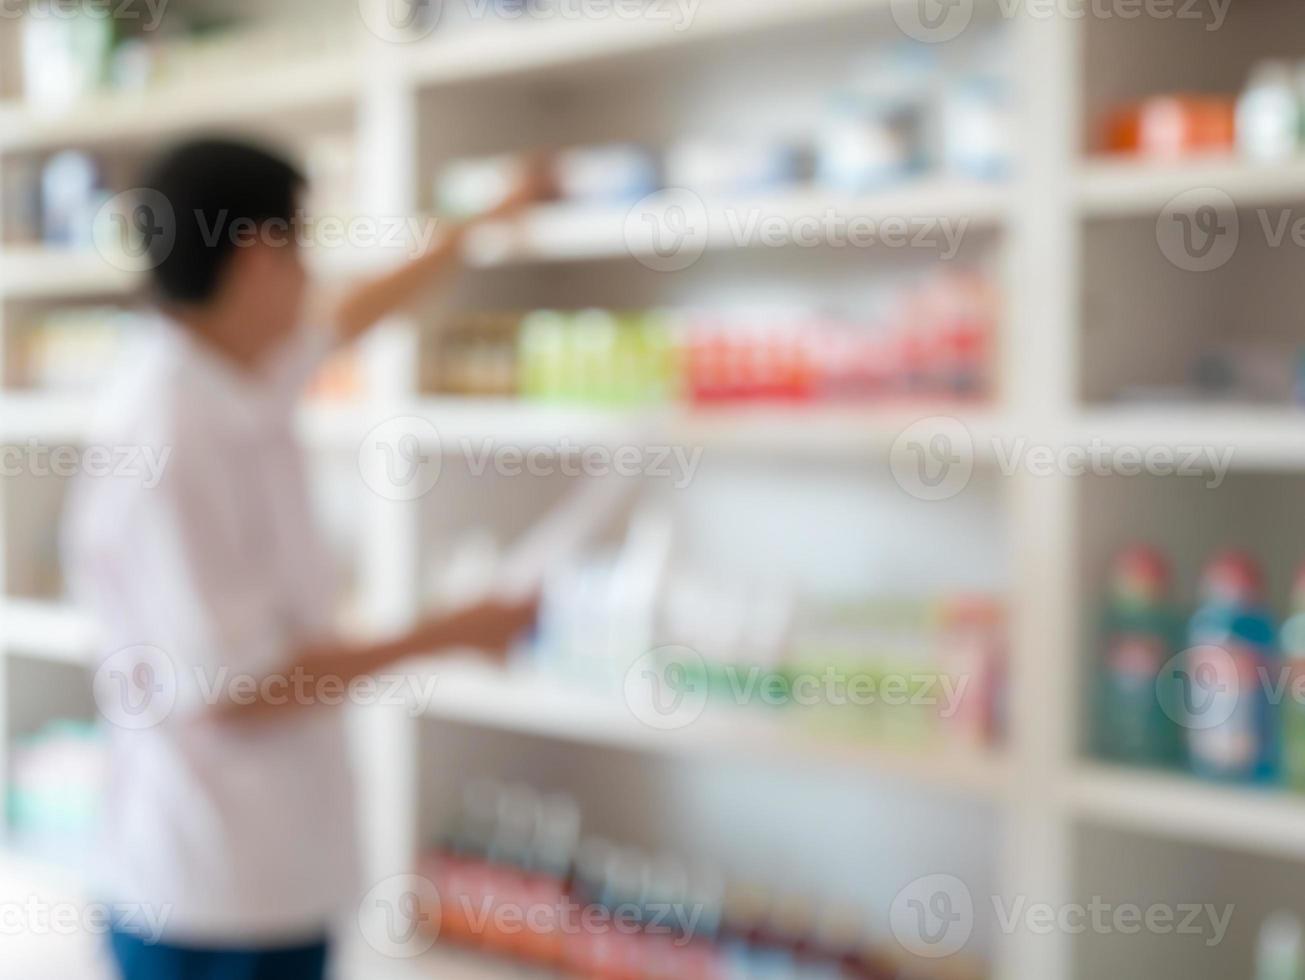 flou pharmacien prenant des médicaments de l'étagère de la pharmacie photo